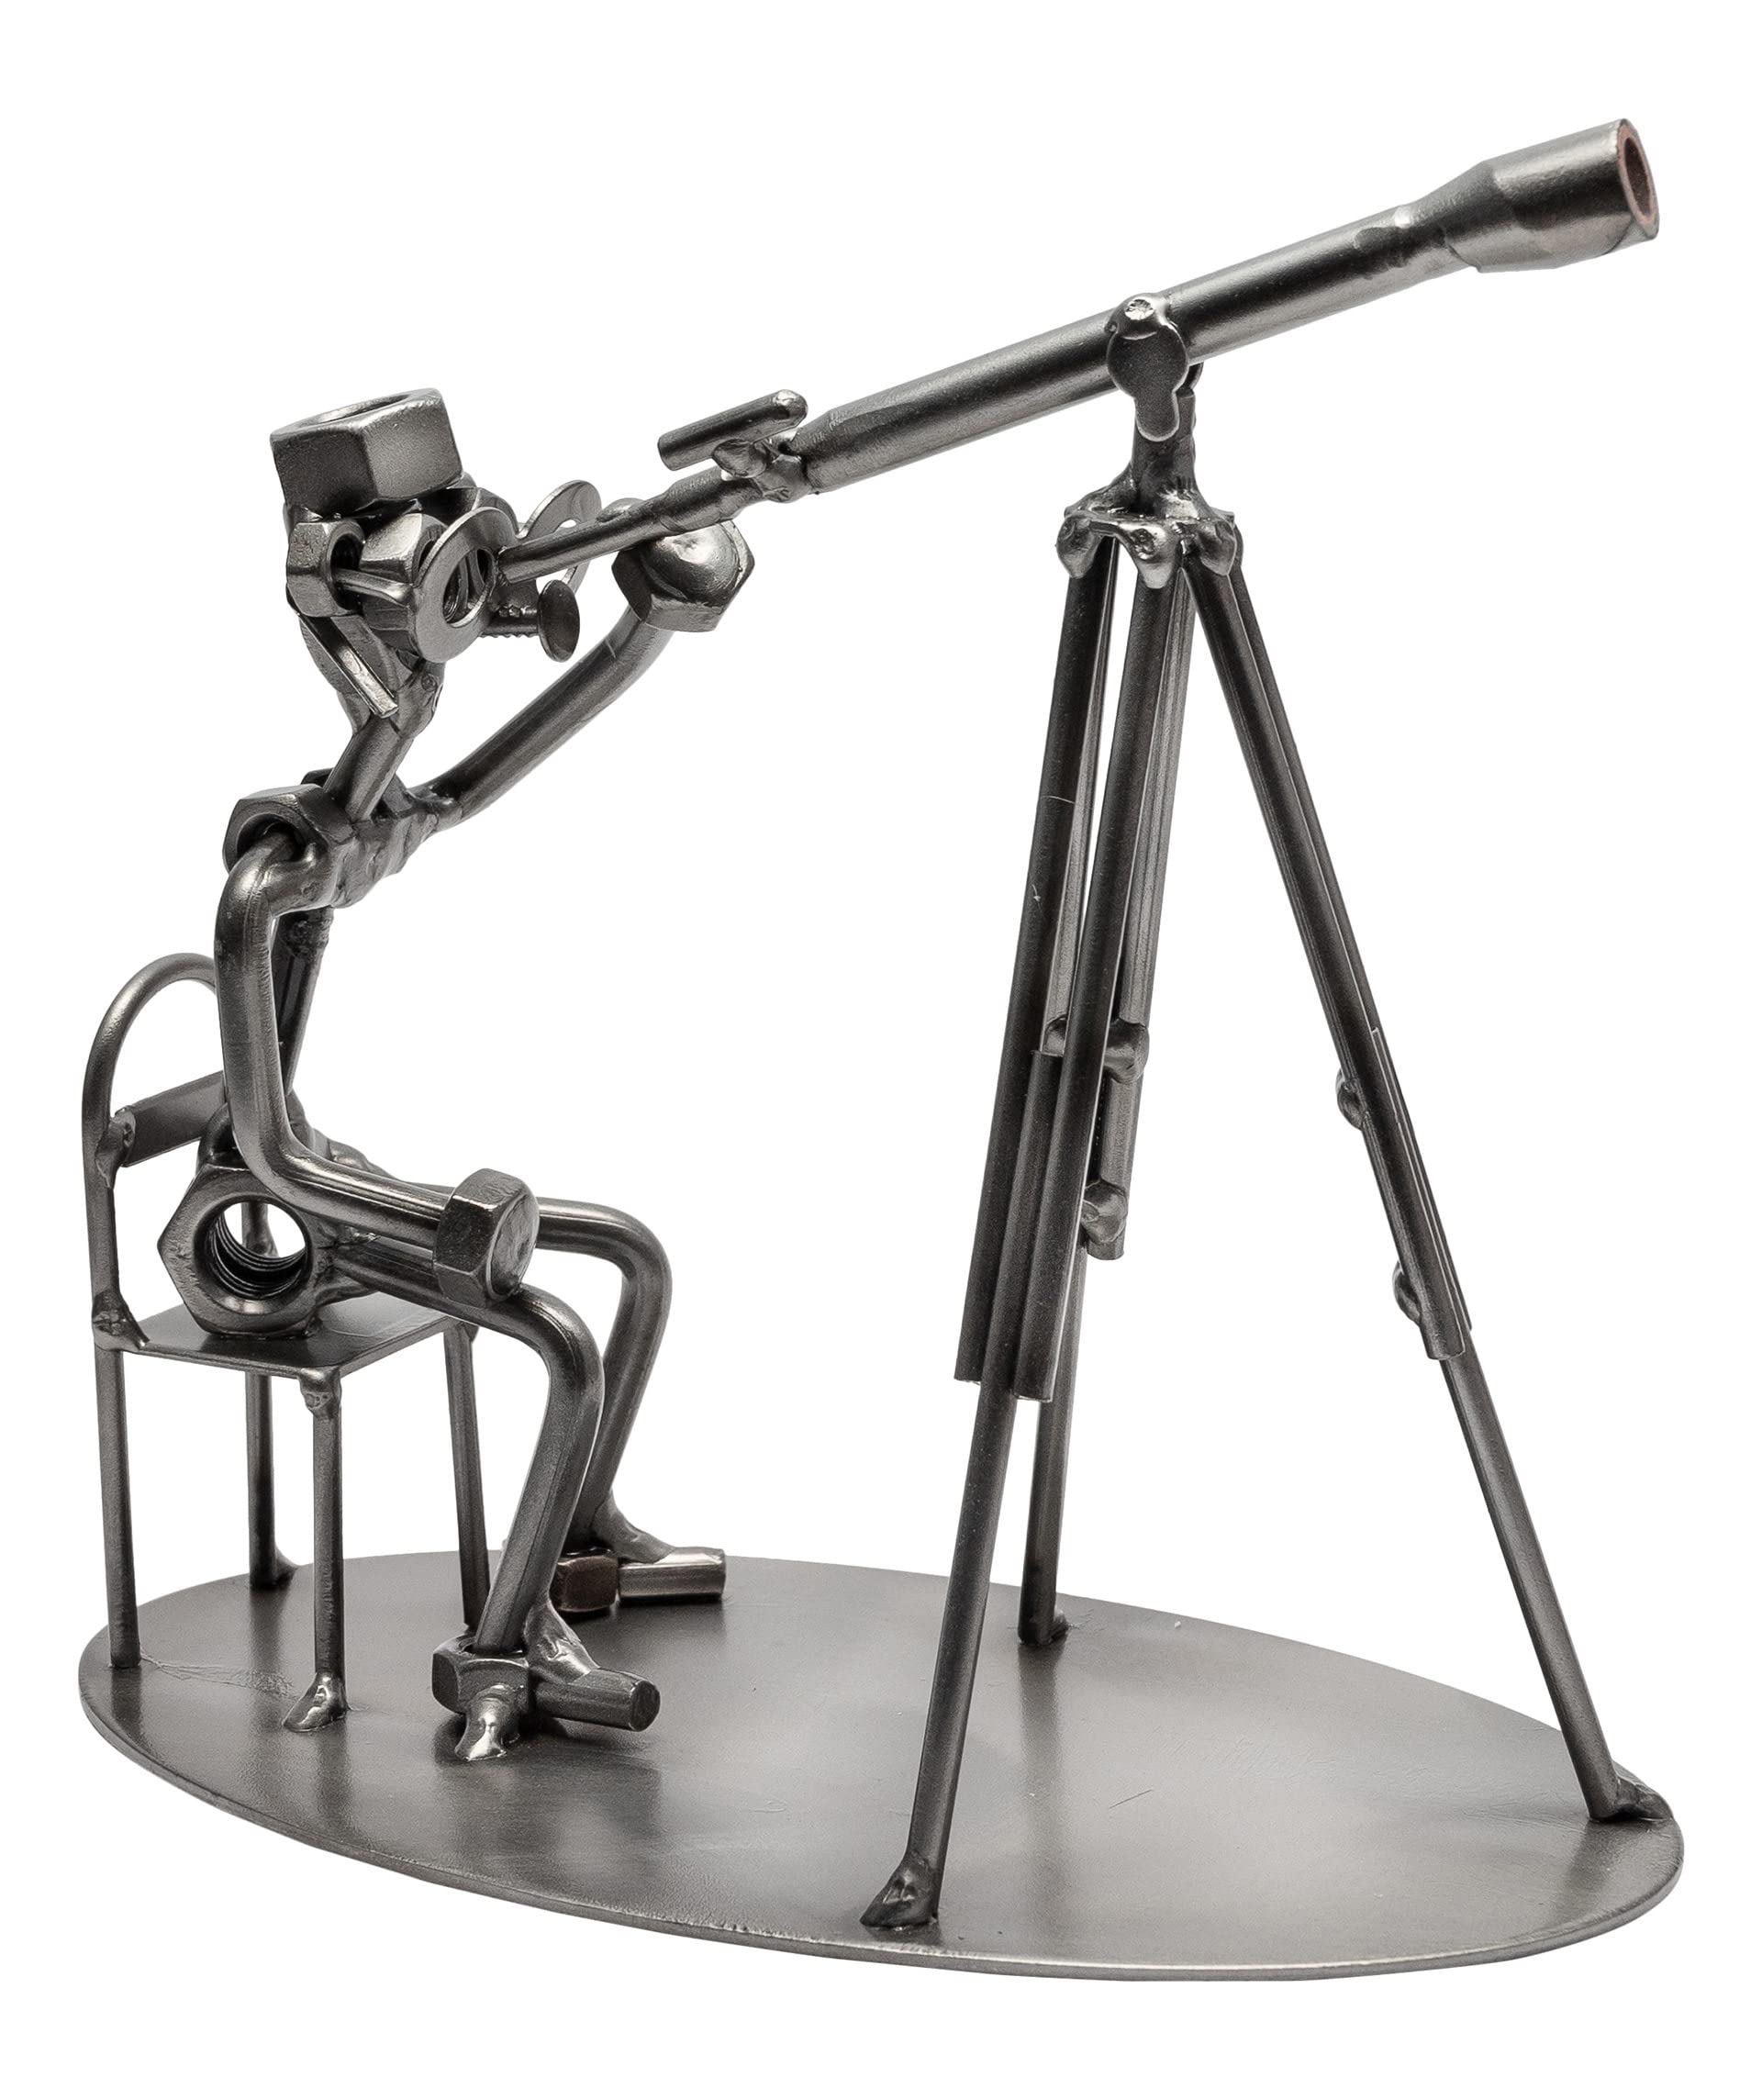 STEEMO Schraubenmännchen Astronom Teleskop Geschenk Astronomie Metall-Kunst Deko Figur, Stahl, grau 18x10x17 cm